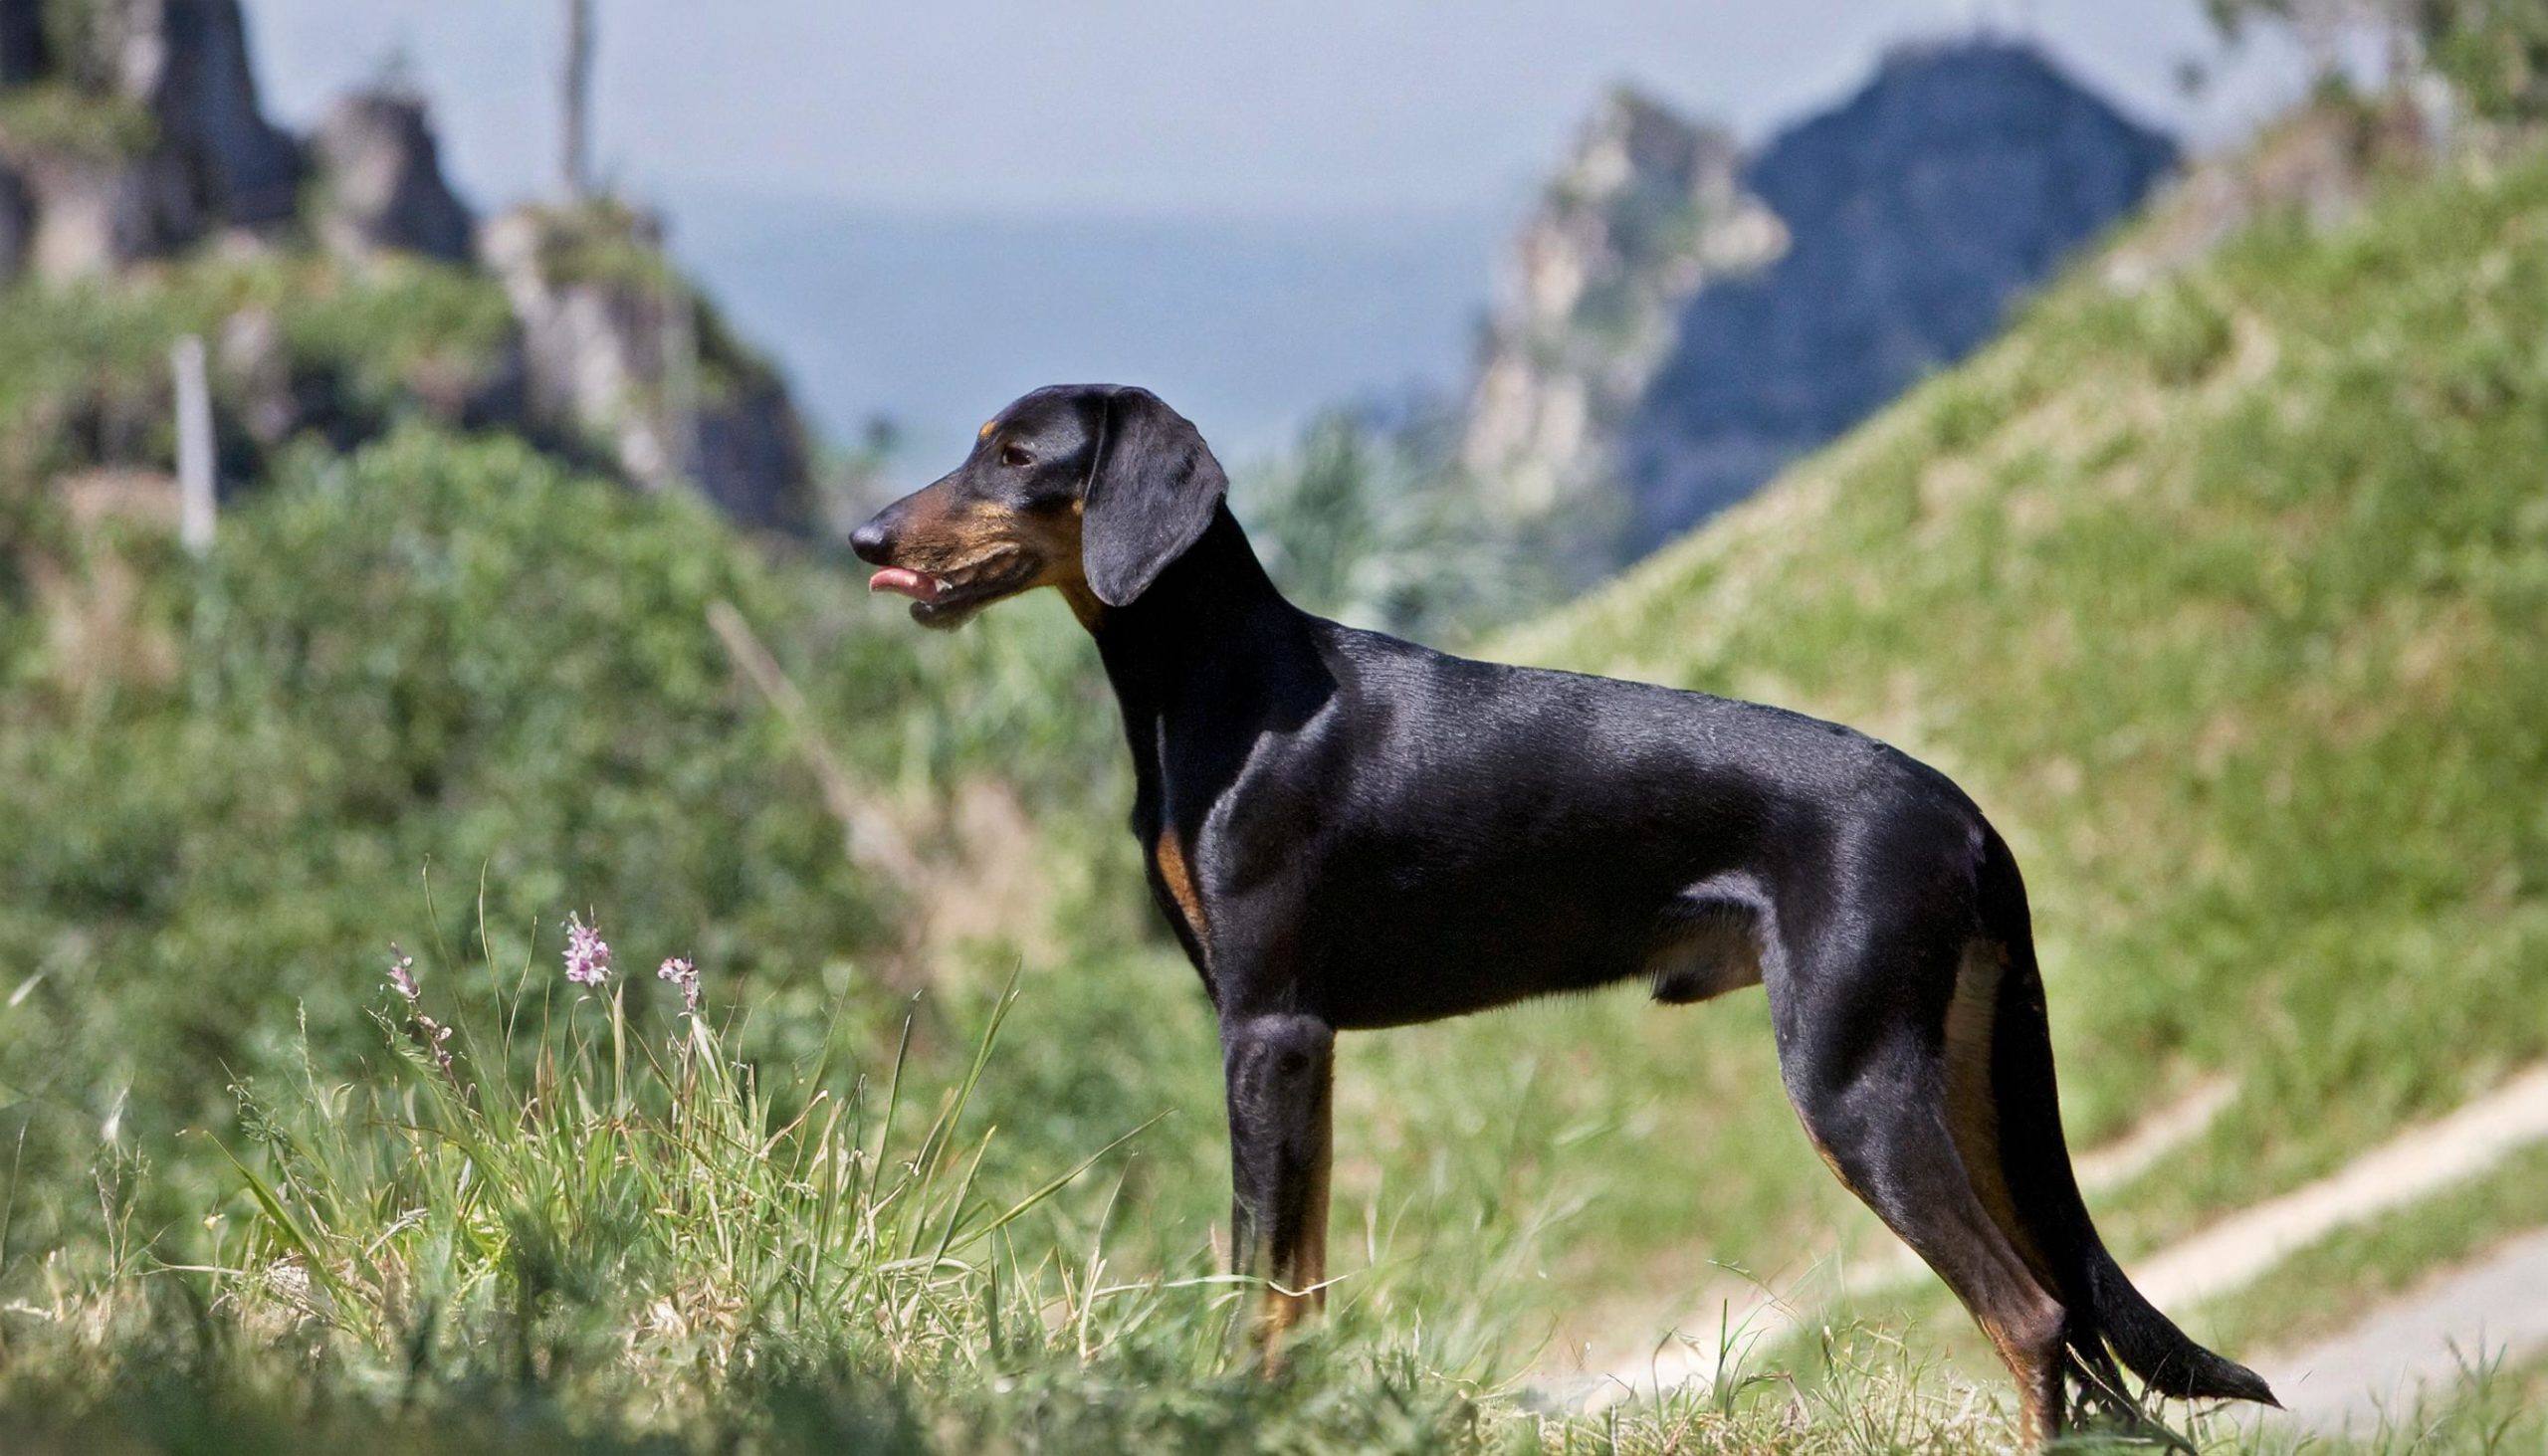 De Crnogorski planinski gonic is een vrij zeldzaam hondenras uit Montenegro, vroeger bekend onder de naam Joegoslavische berghond.